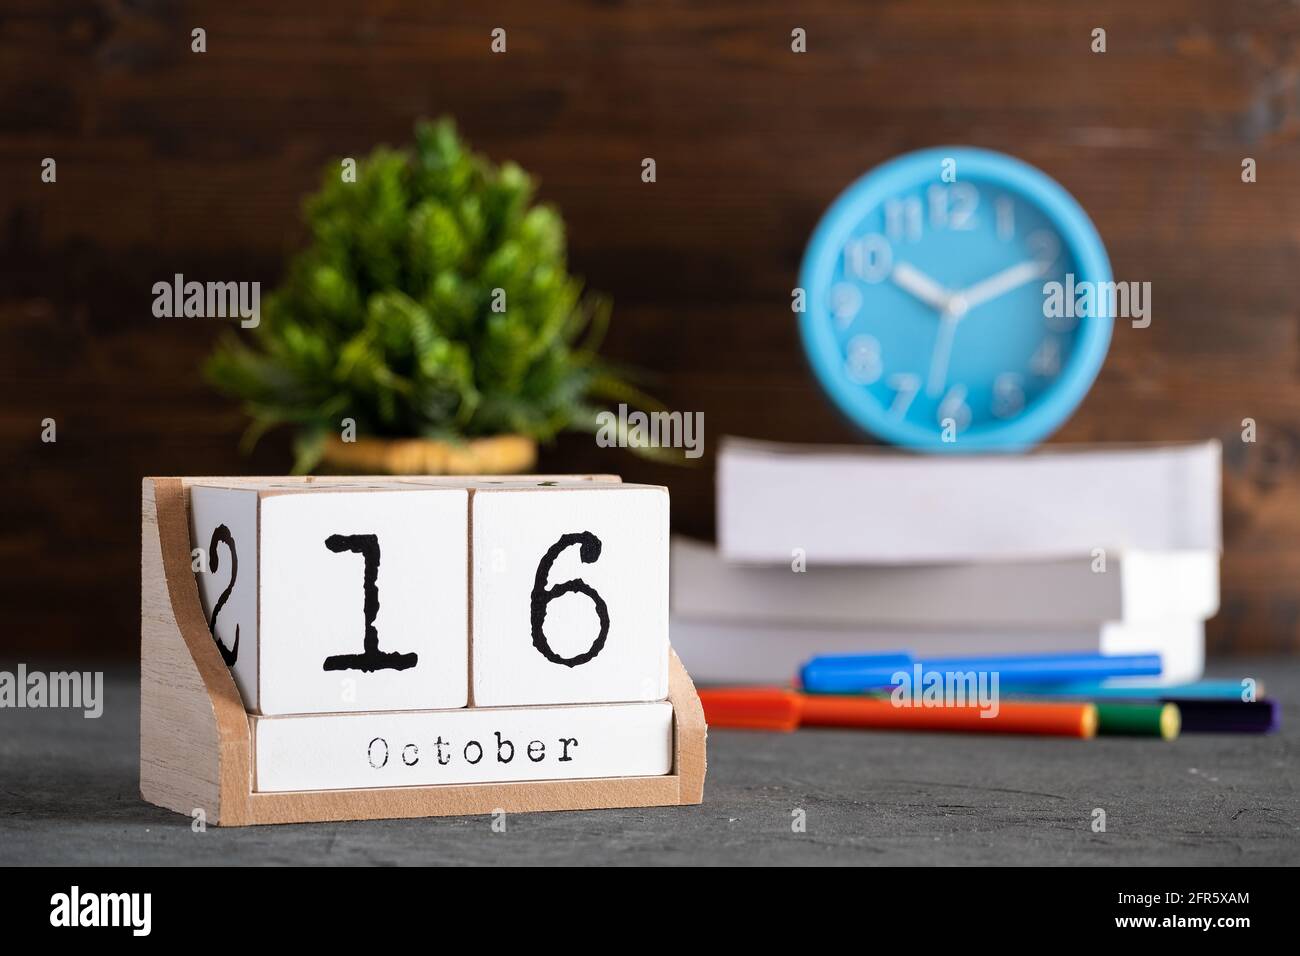 16 octobre. Octobre 16 calendrier cube en bois avec objets flous sur fond. Banque D'Images